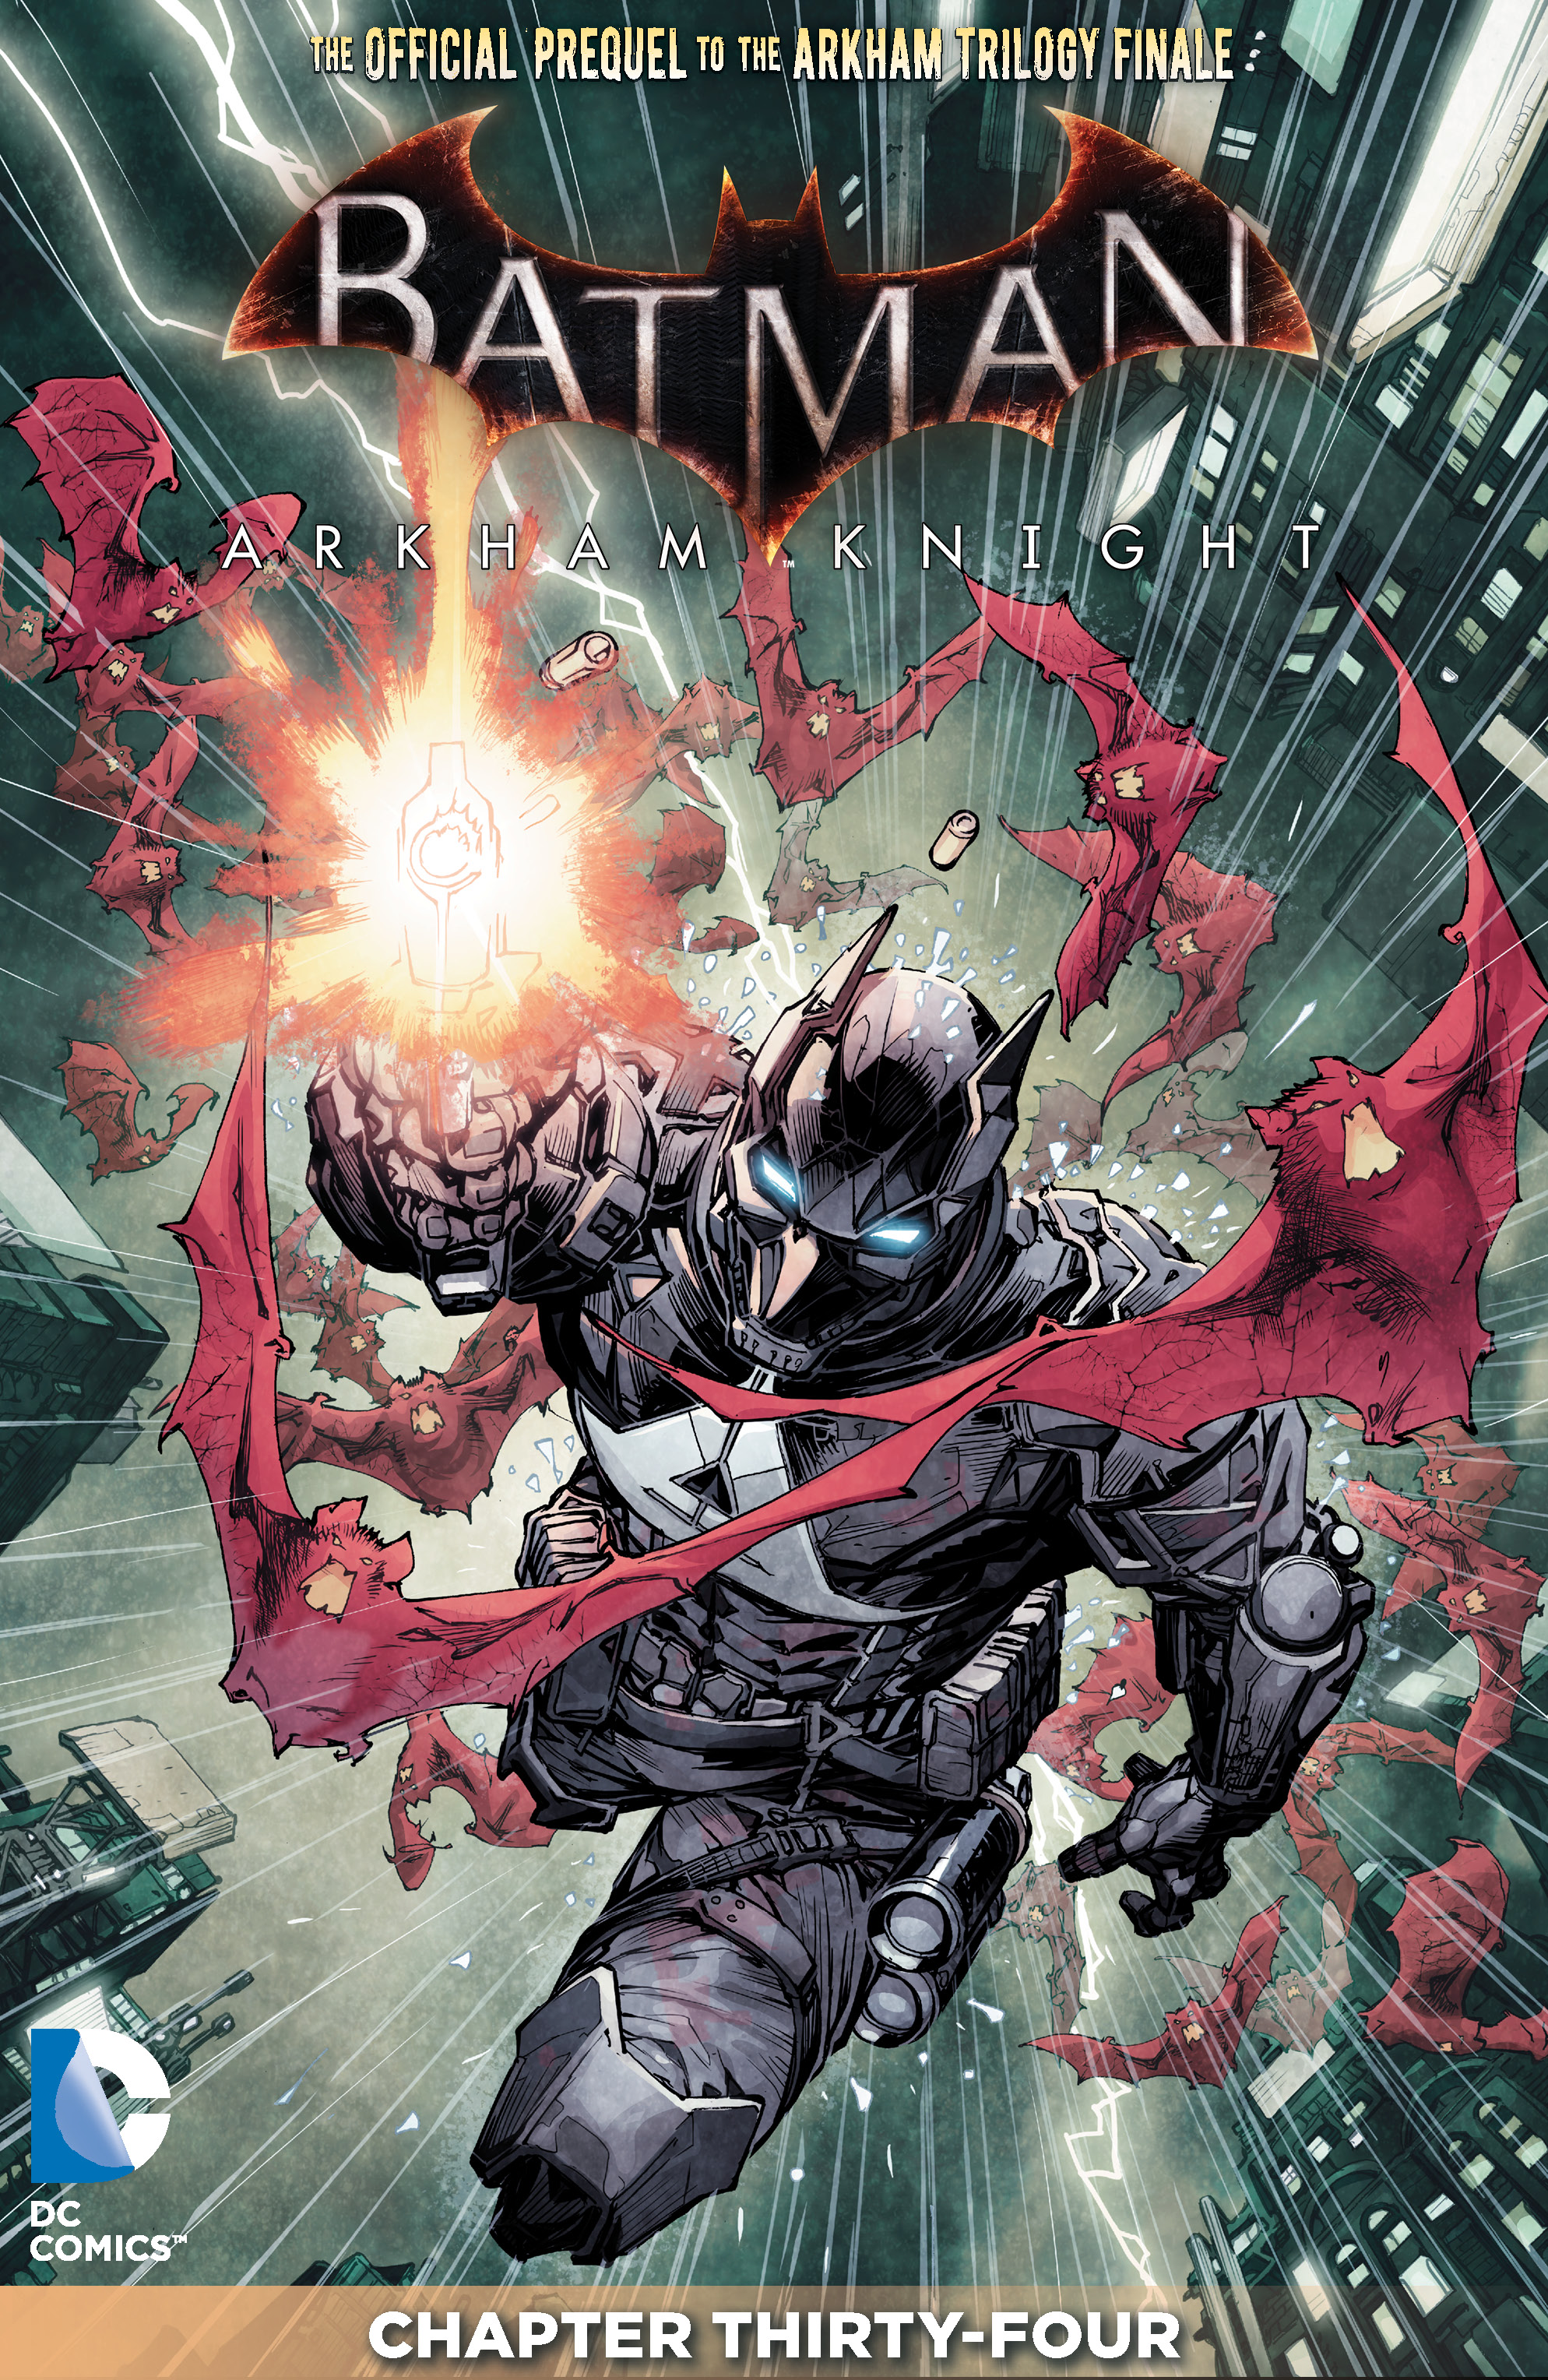 Batman: Arkham Knight #34 preview images